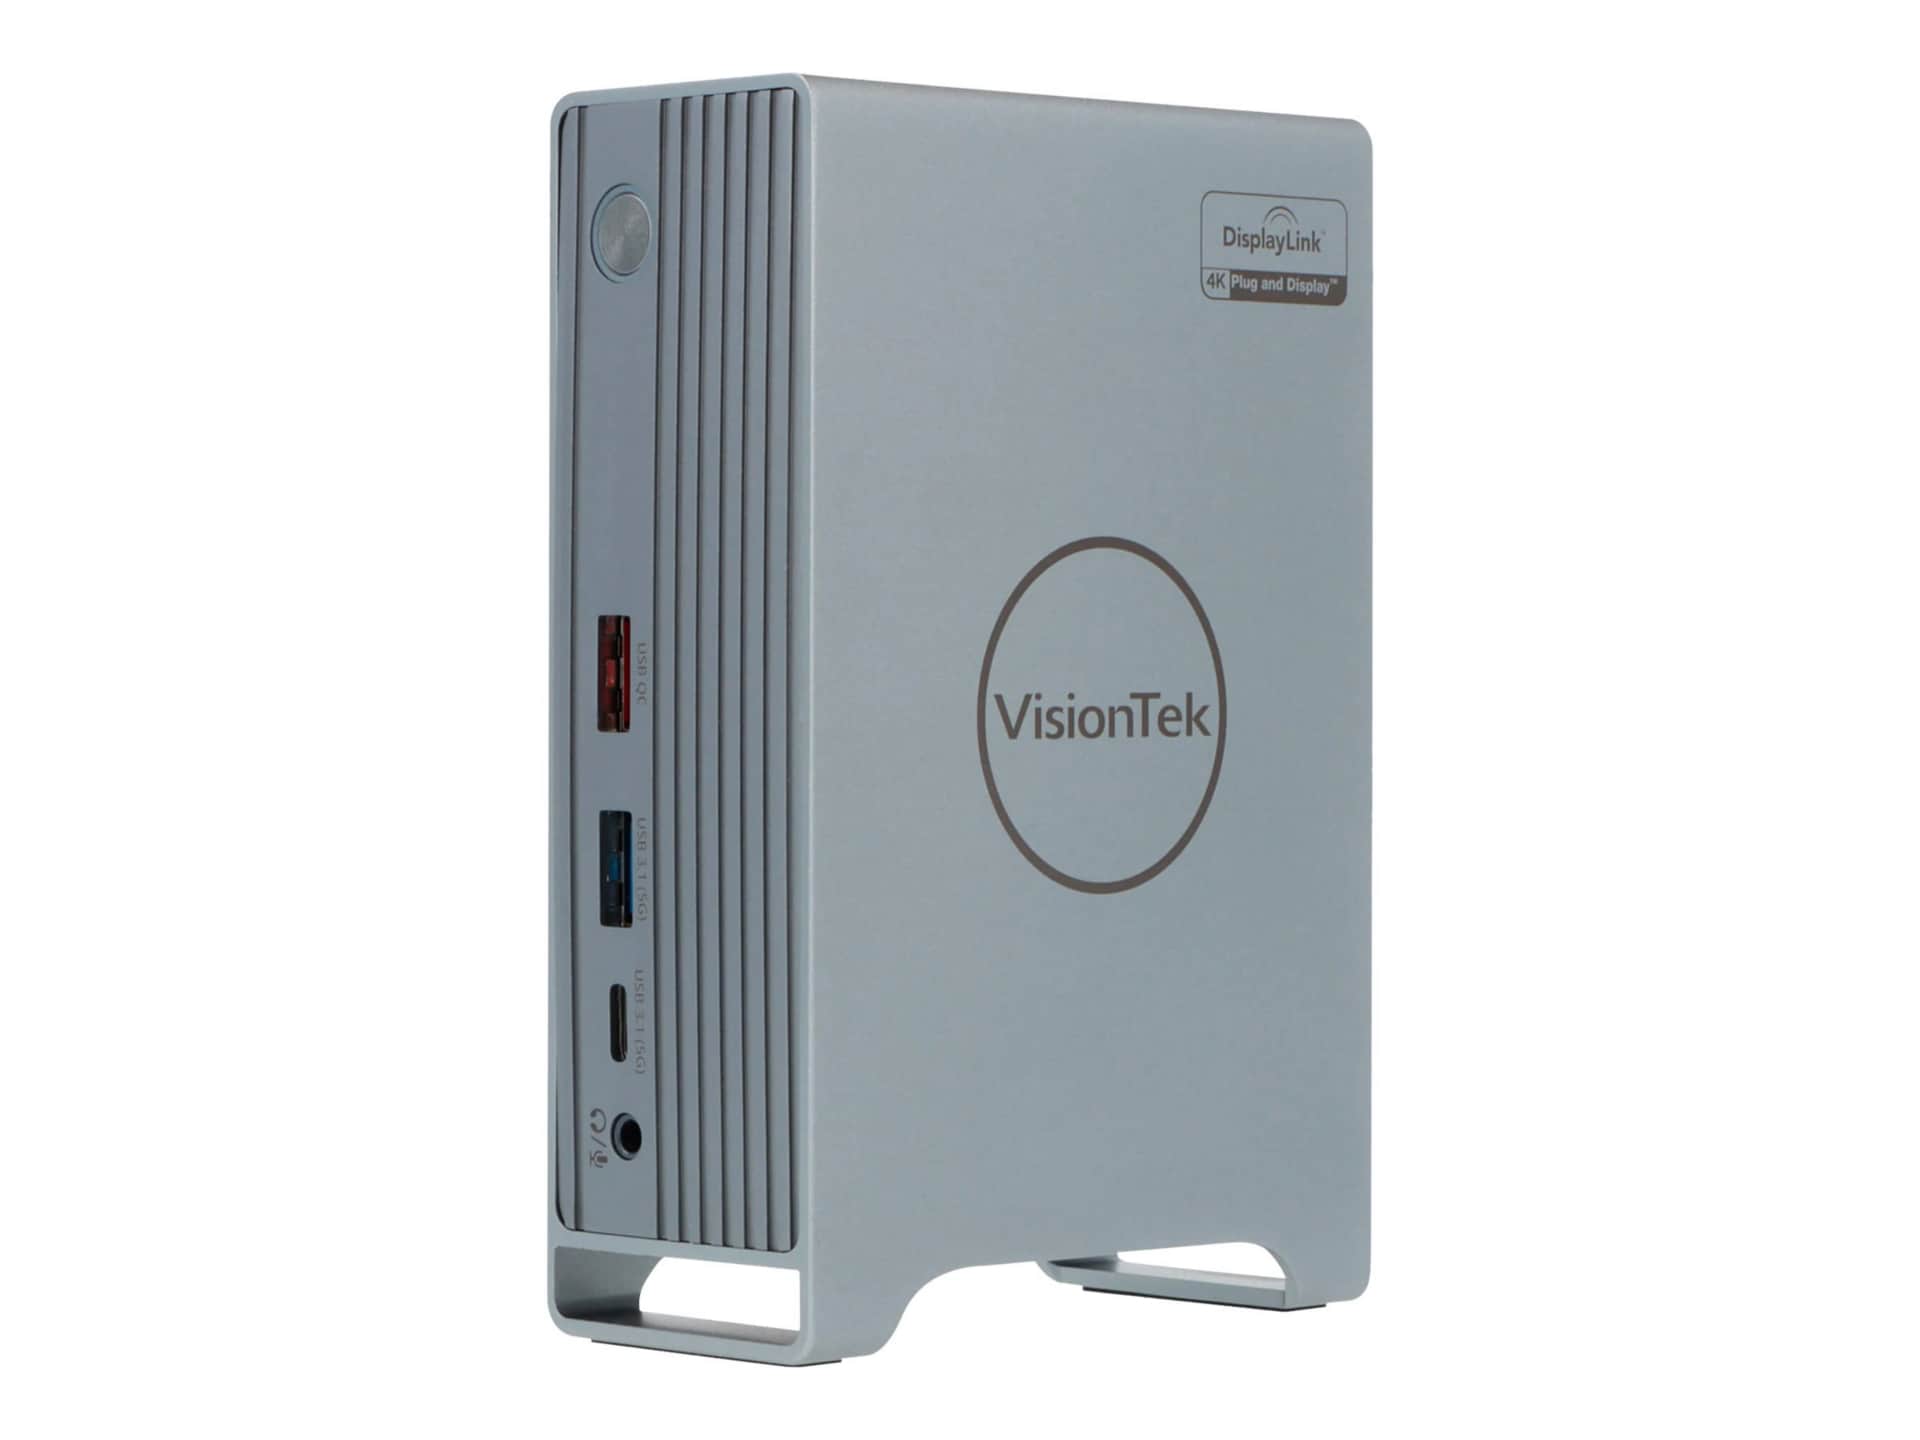 VisionTek VT7100 Triple Display 4K USB-C Docking Station with 100W Power De